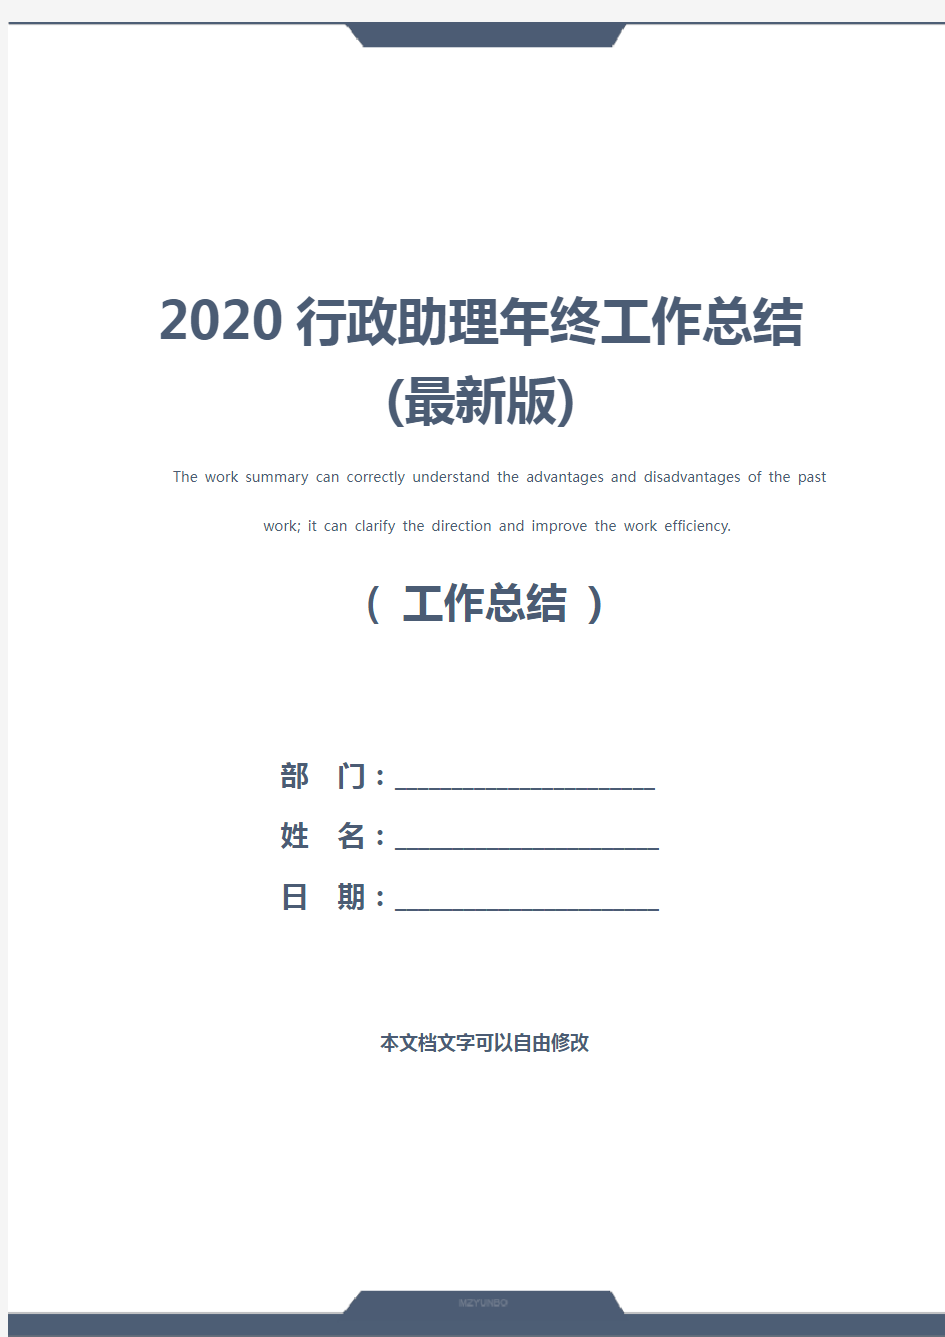 2020行政助理年终工作总结(最新版)